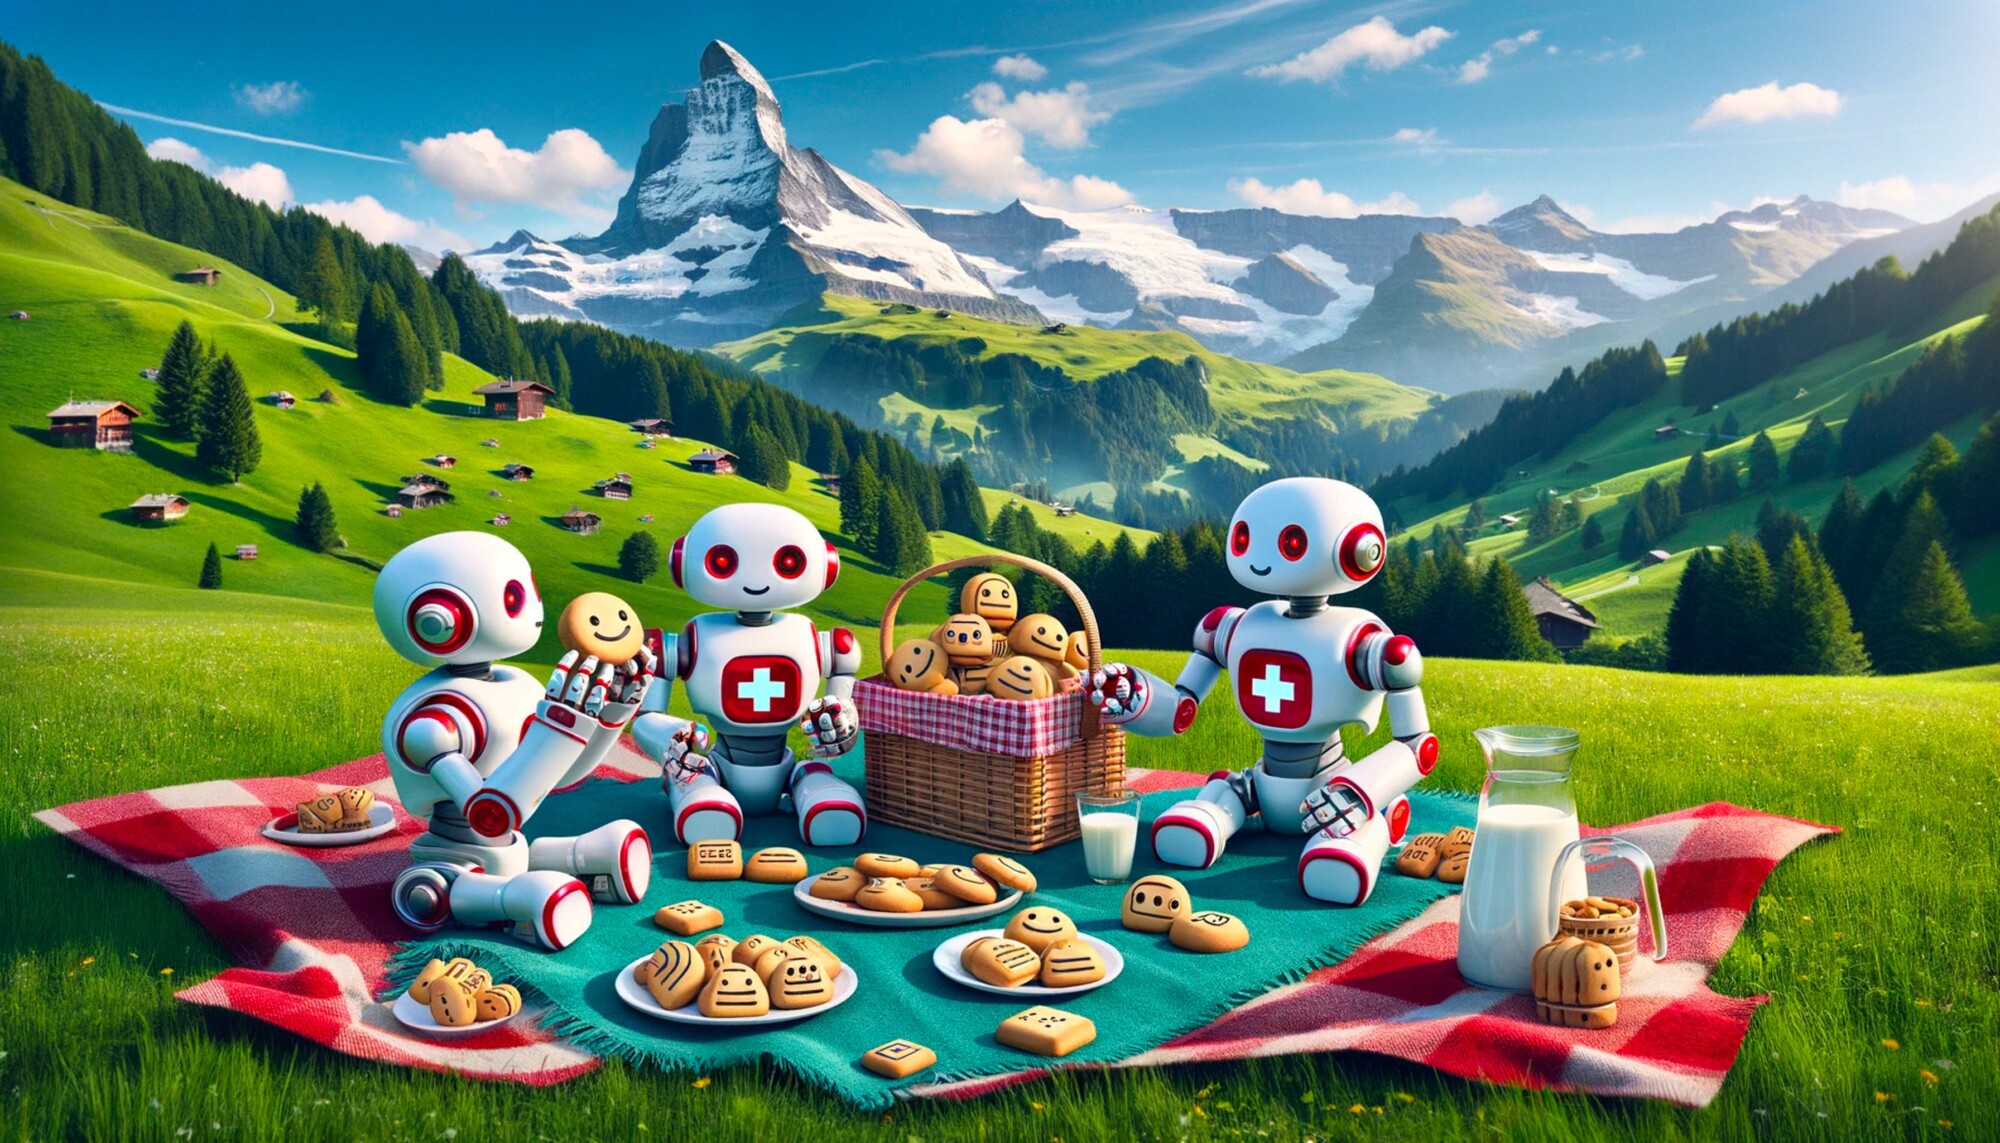 Bild: Androiden veranstalten ein Picknick in einer schweizerischen Alpenlandschaft und diskutieren über die Cookies, die sie mitgenommen haben (KI-generiert)